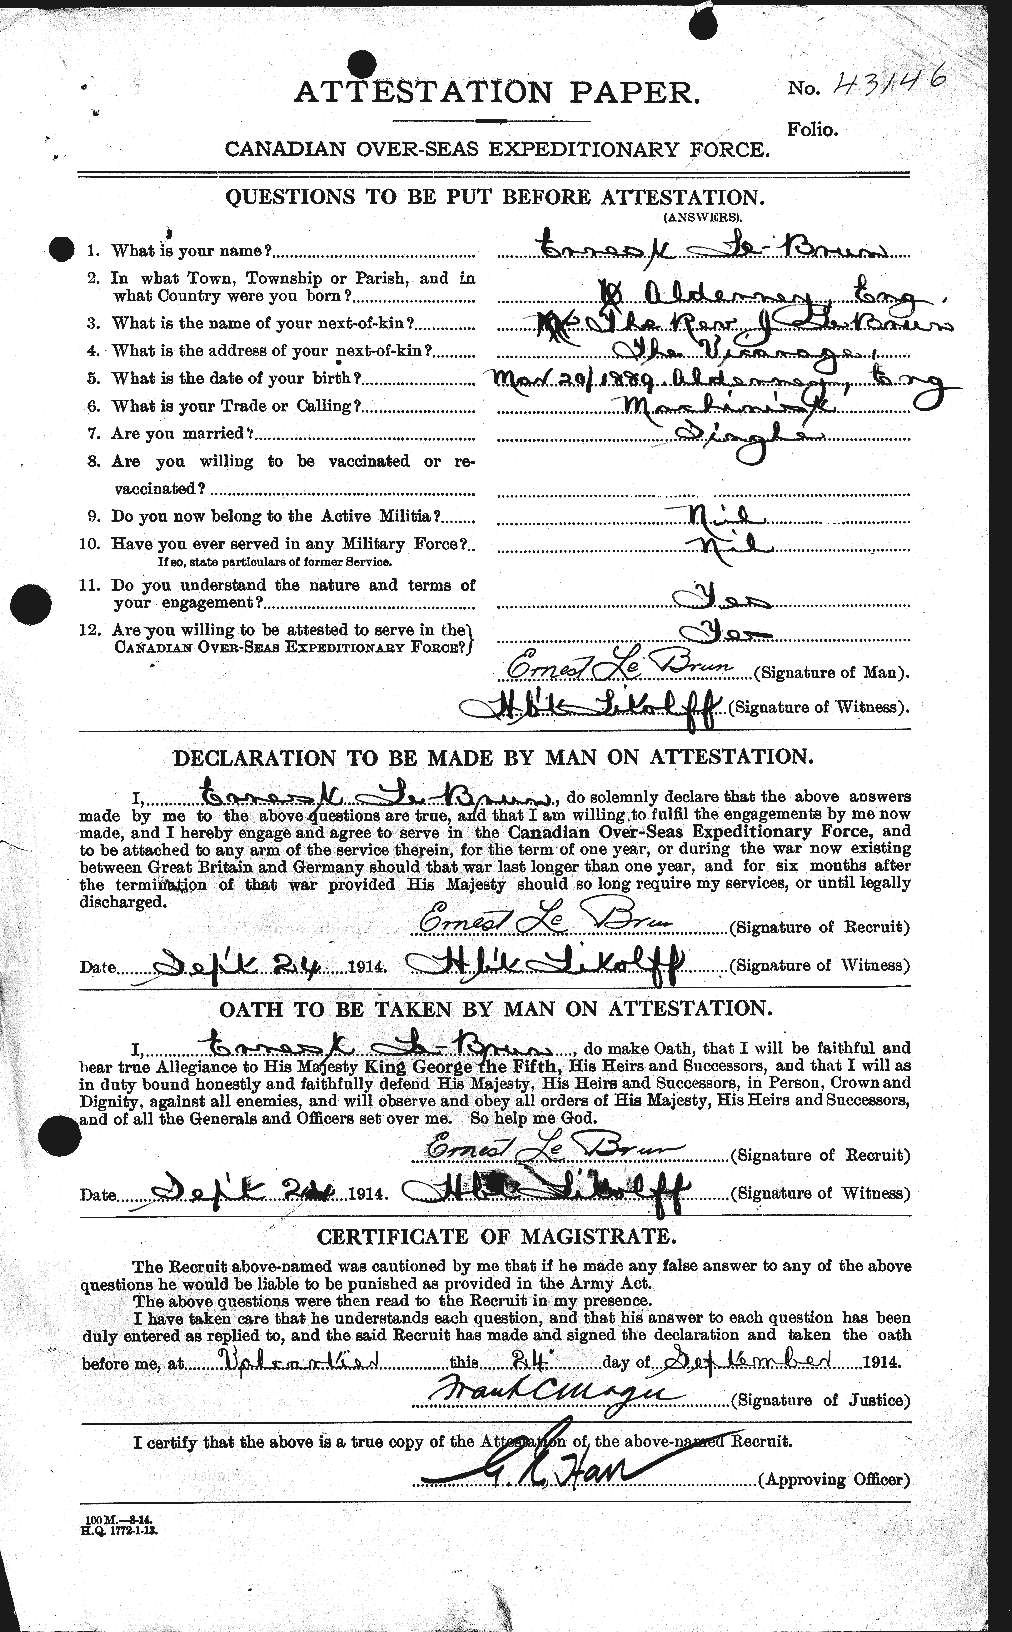 Dossiers du Personnel de la Première Guerre mondiale - CEC 461556a